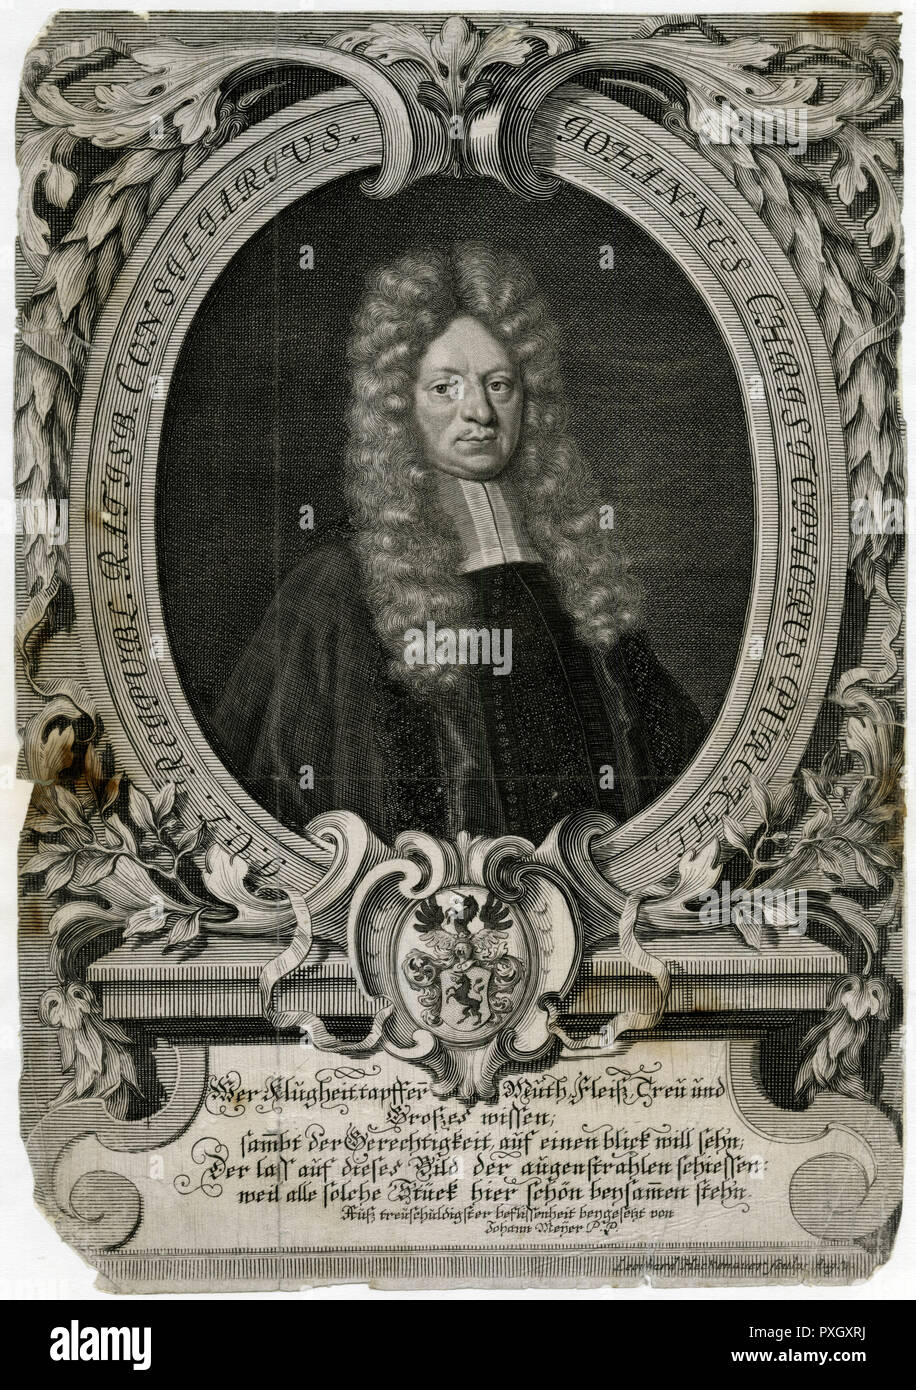 Johann Christoph Purckhl de Ratisbona, Baviera, Alemania, autor de varios libros sobre derecho durante los 1670s y 1680s. Fecha: circa 1670s Foto de stock